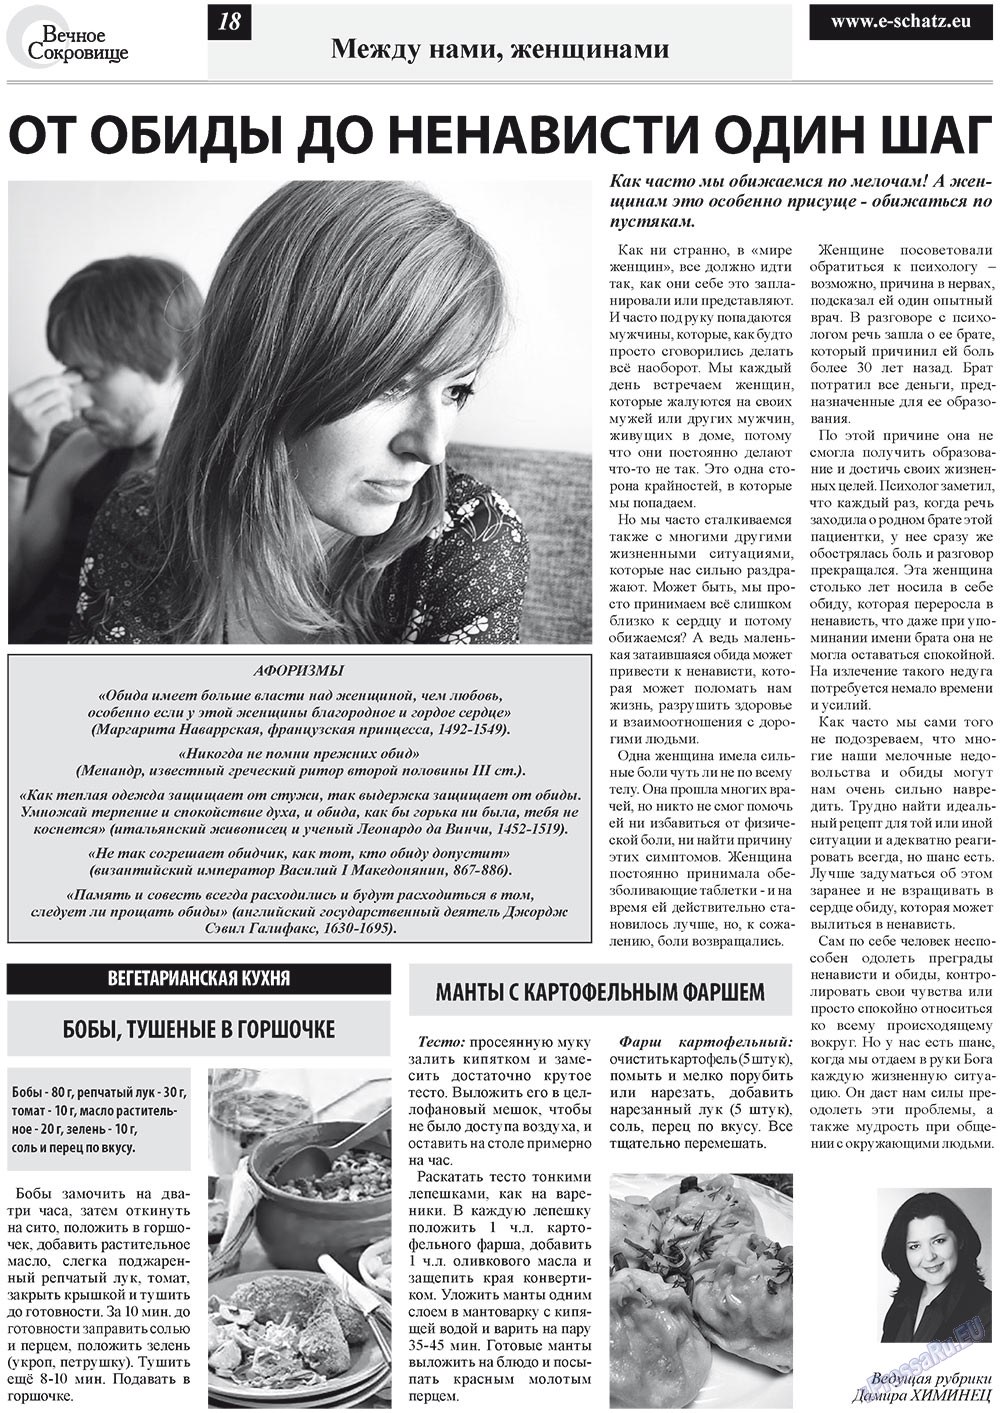 Вечное сокровище, газета. 2012 №2 стр.18